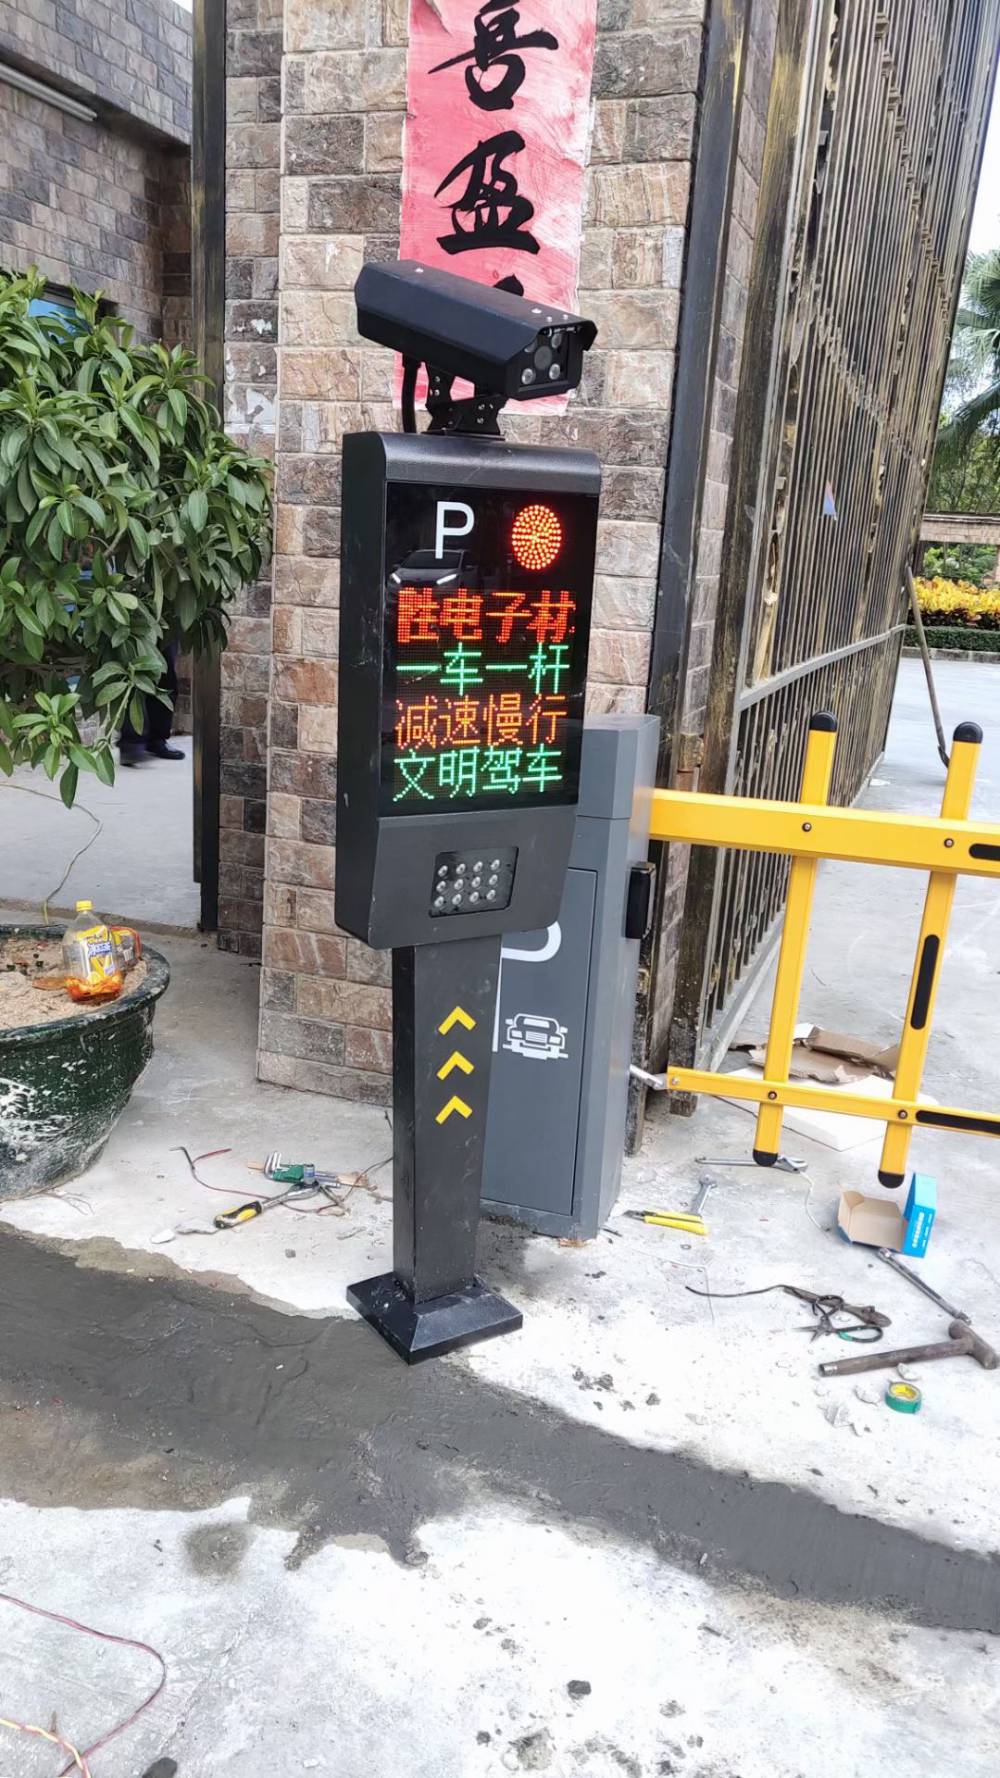 惠州市大亚湾 车牌识别智能停车管理系统安装